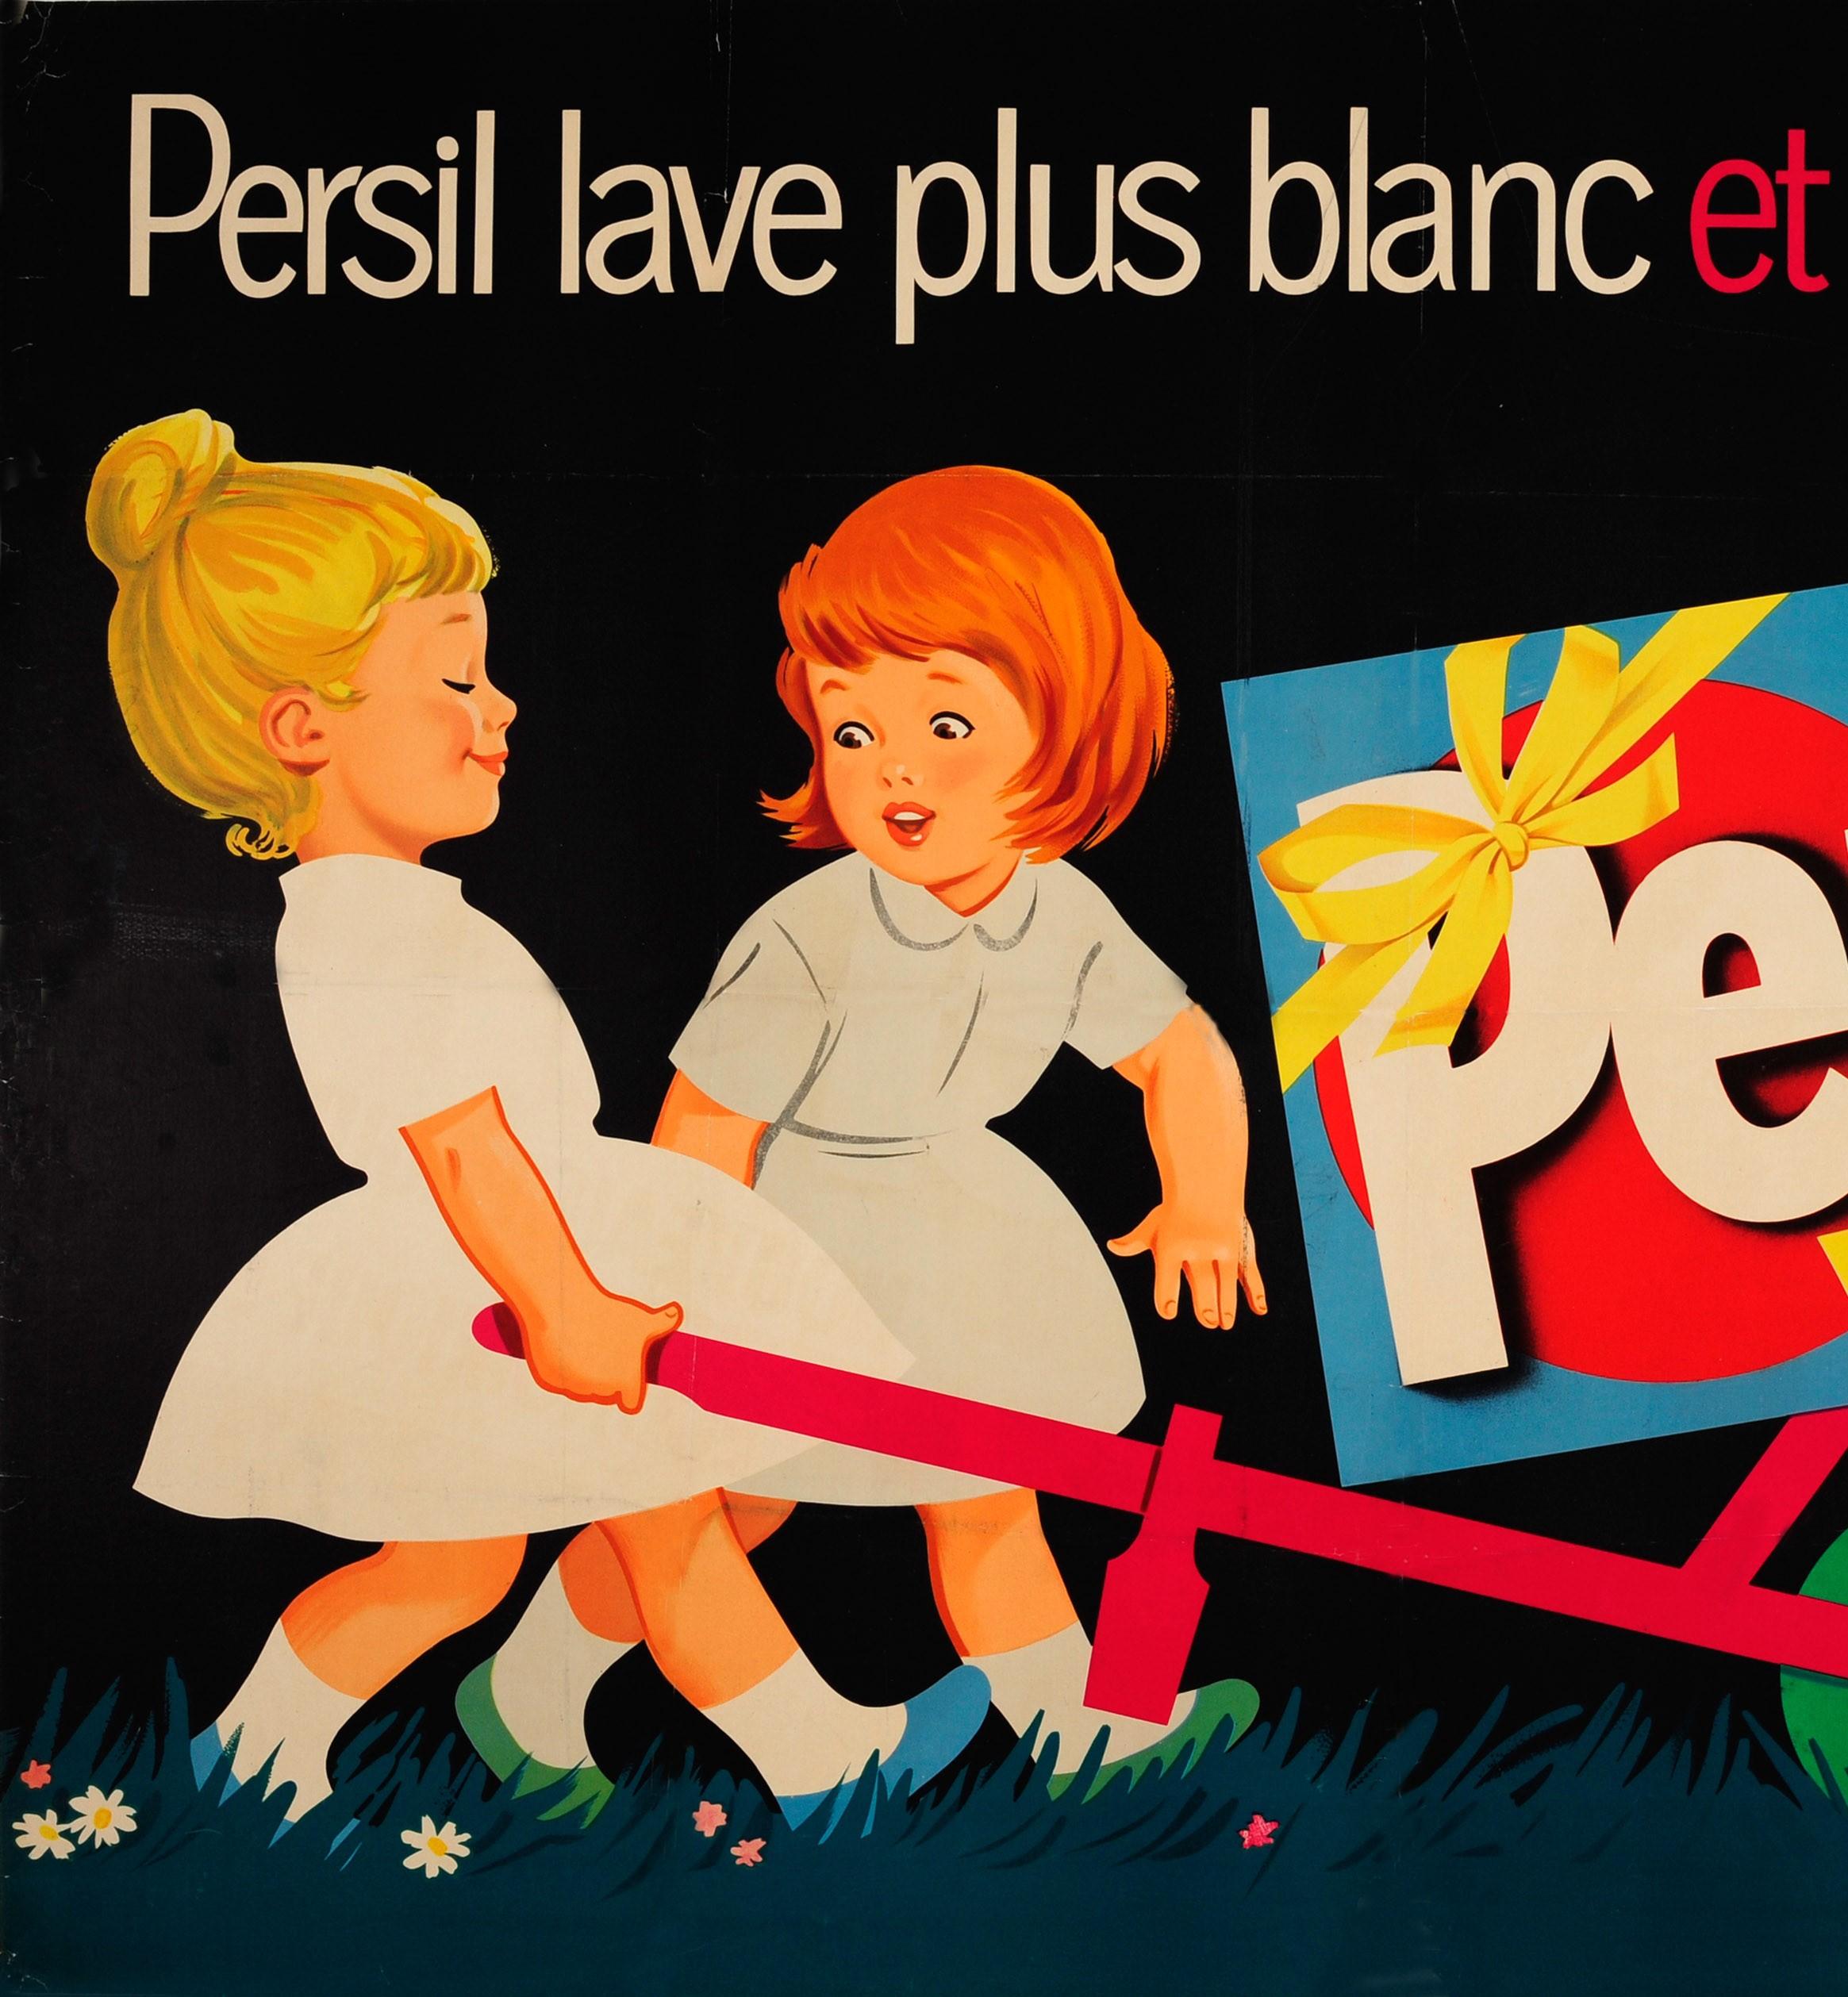 Affiche publicitaire vintage originale pour la lessive Persil présentant une superbe illustration sur fond sombre de deux jeunes filles en robe blanche, l'une poussant une boîte Persil sur roulettes dans l'herbe et l'autre admirant sa robe propre et